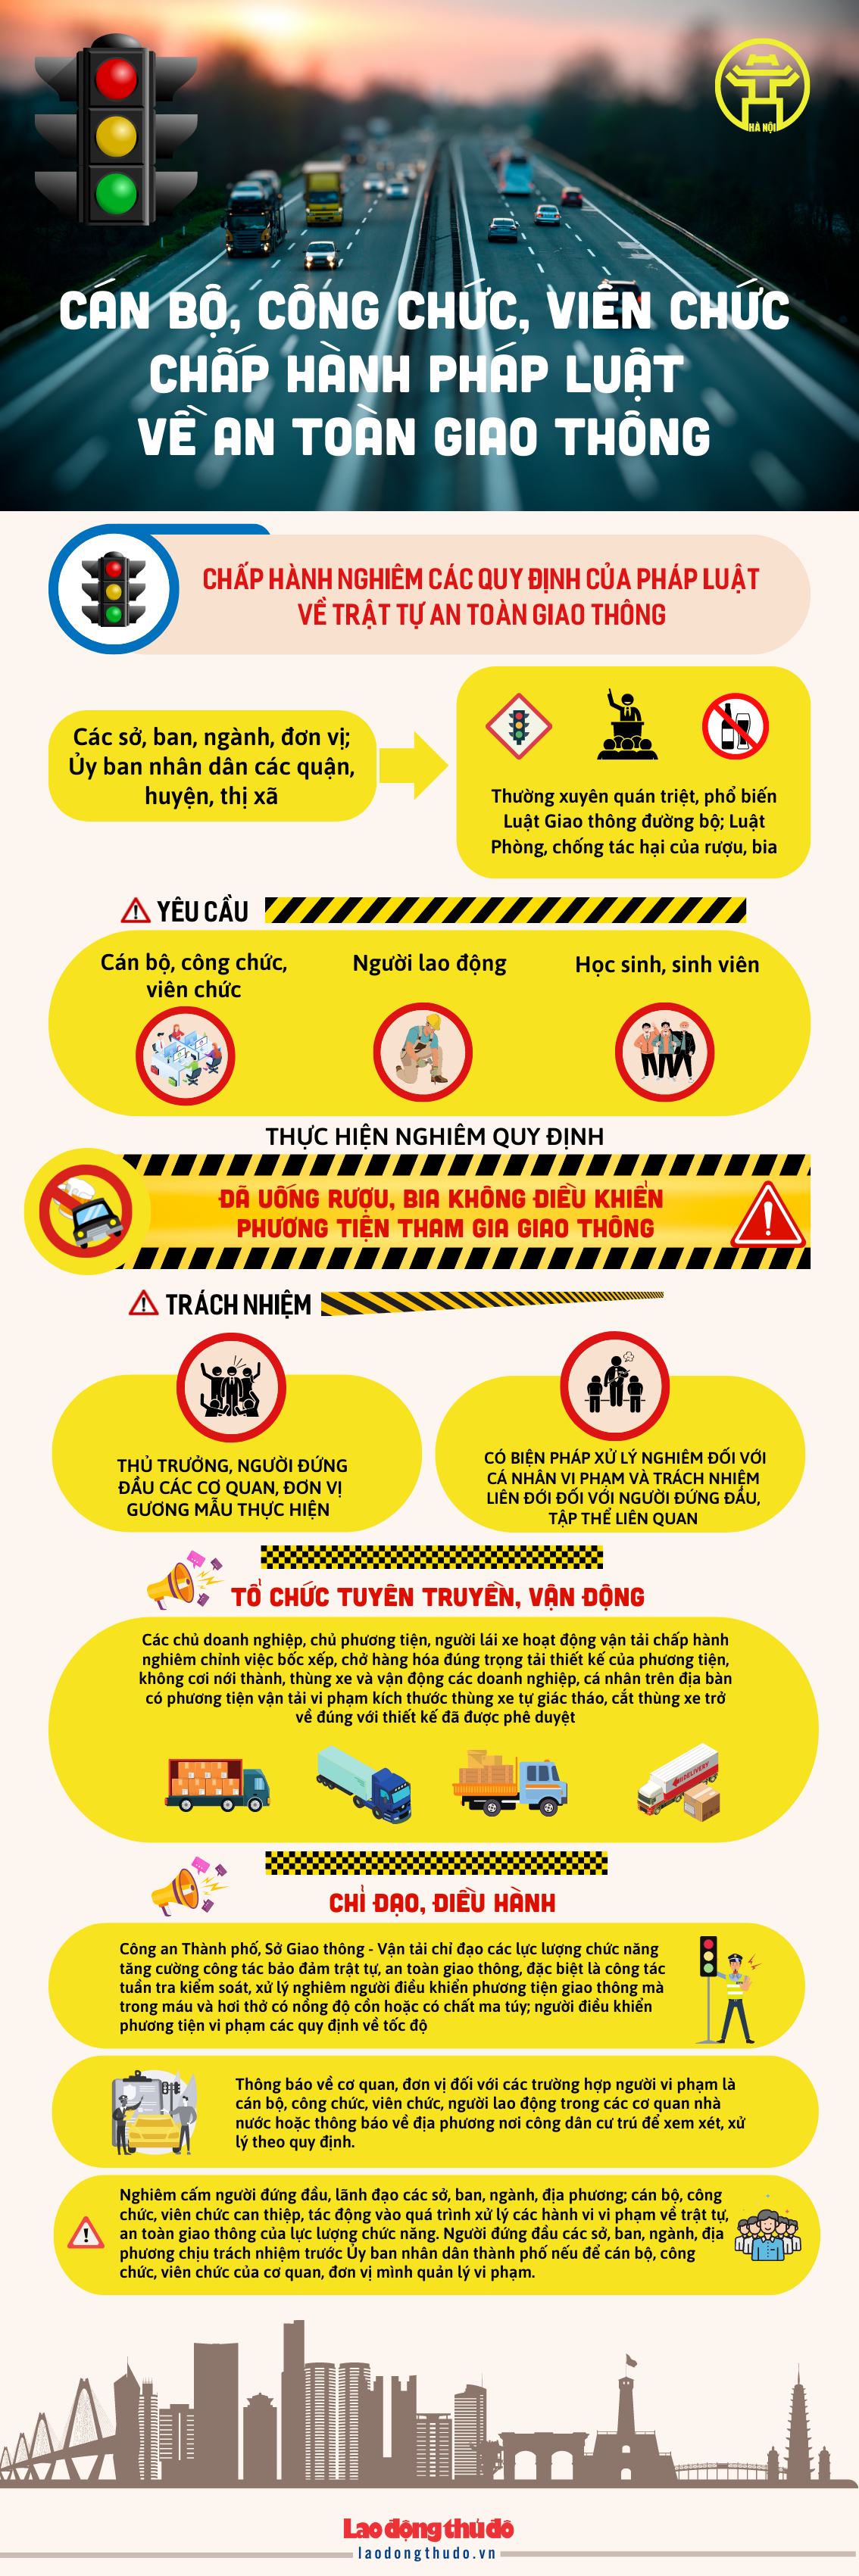 [Infographic] Hà Nội: Cán bộ, công chức, viên chức chấp hành pháp luật về an toàn giao thông